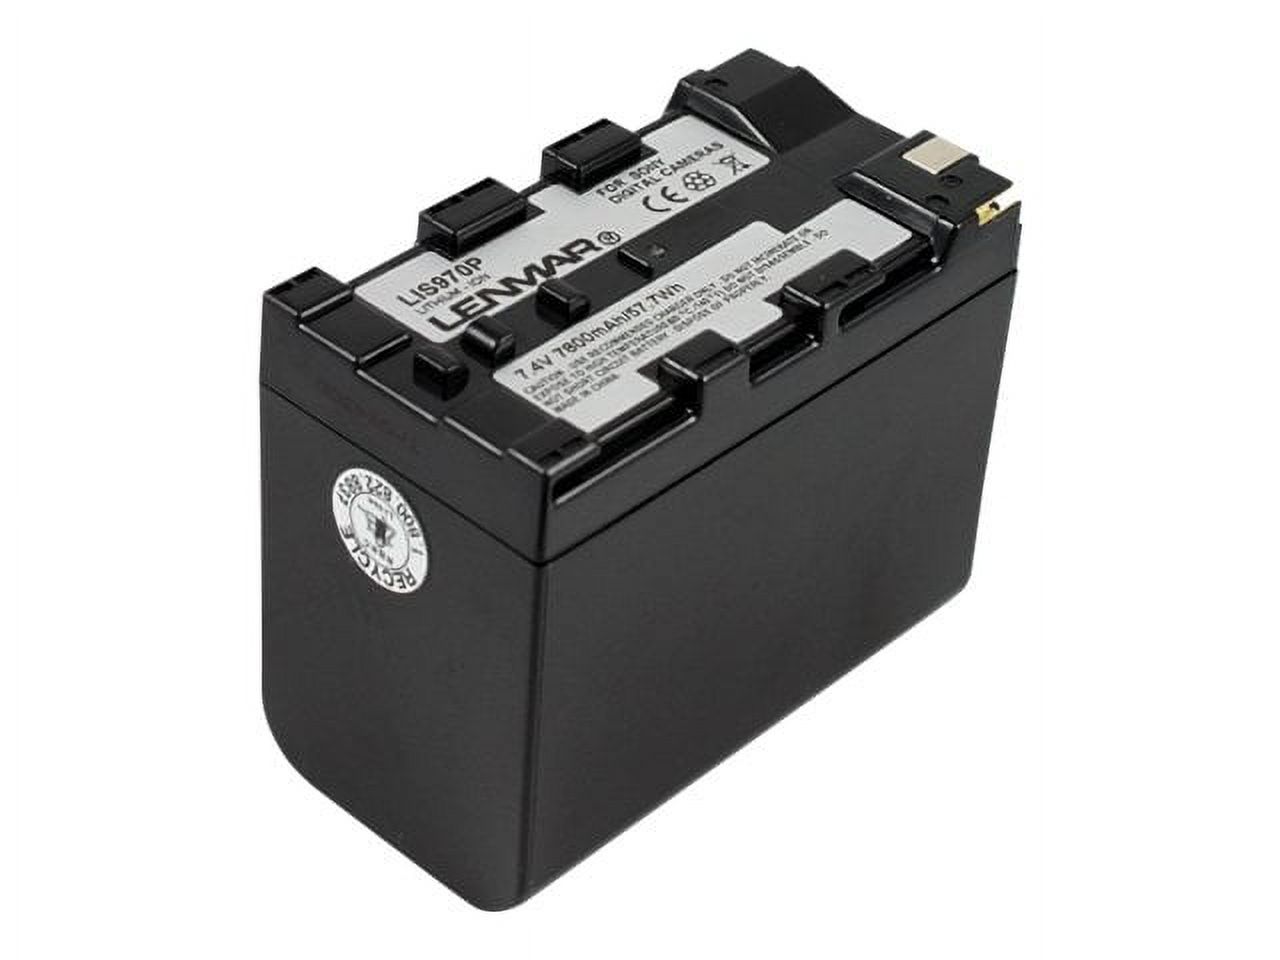 Lenmar LIS 970P - Battery - Li-Ion - 7800 mAh - dark gray - for Sony HVR-V1P, Z1J, Z7J; NXCAM HXR-NX100, NX200, NX5R, NEX-FS100, FS700; XDCAM PXW-Z150 - image 1 of 2